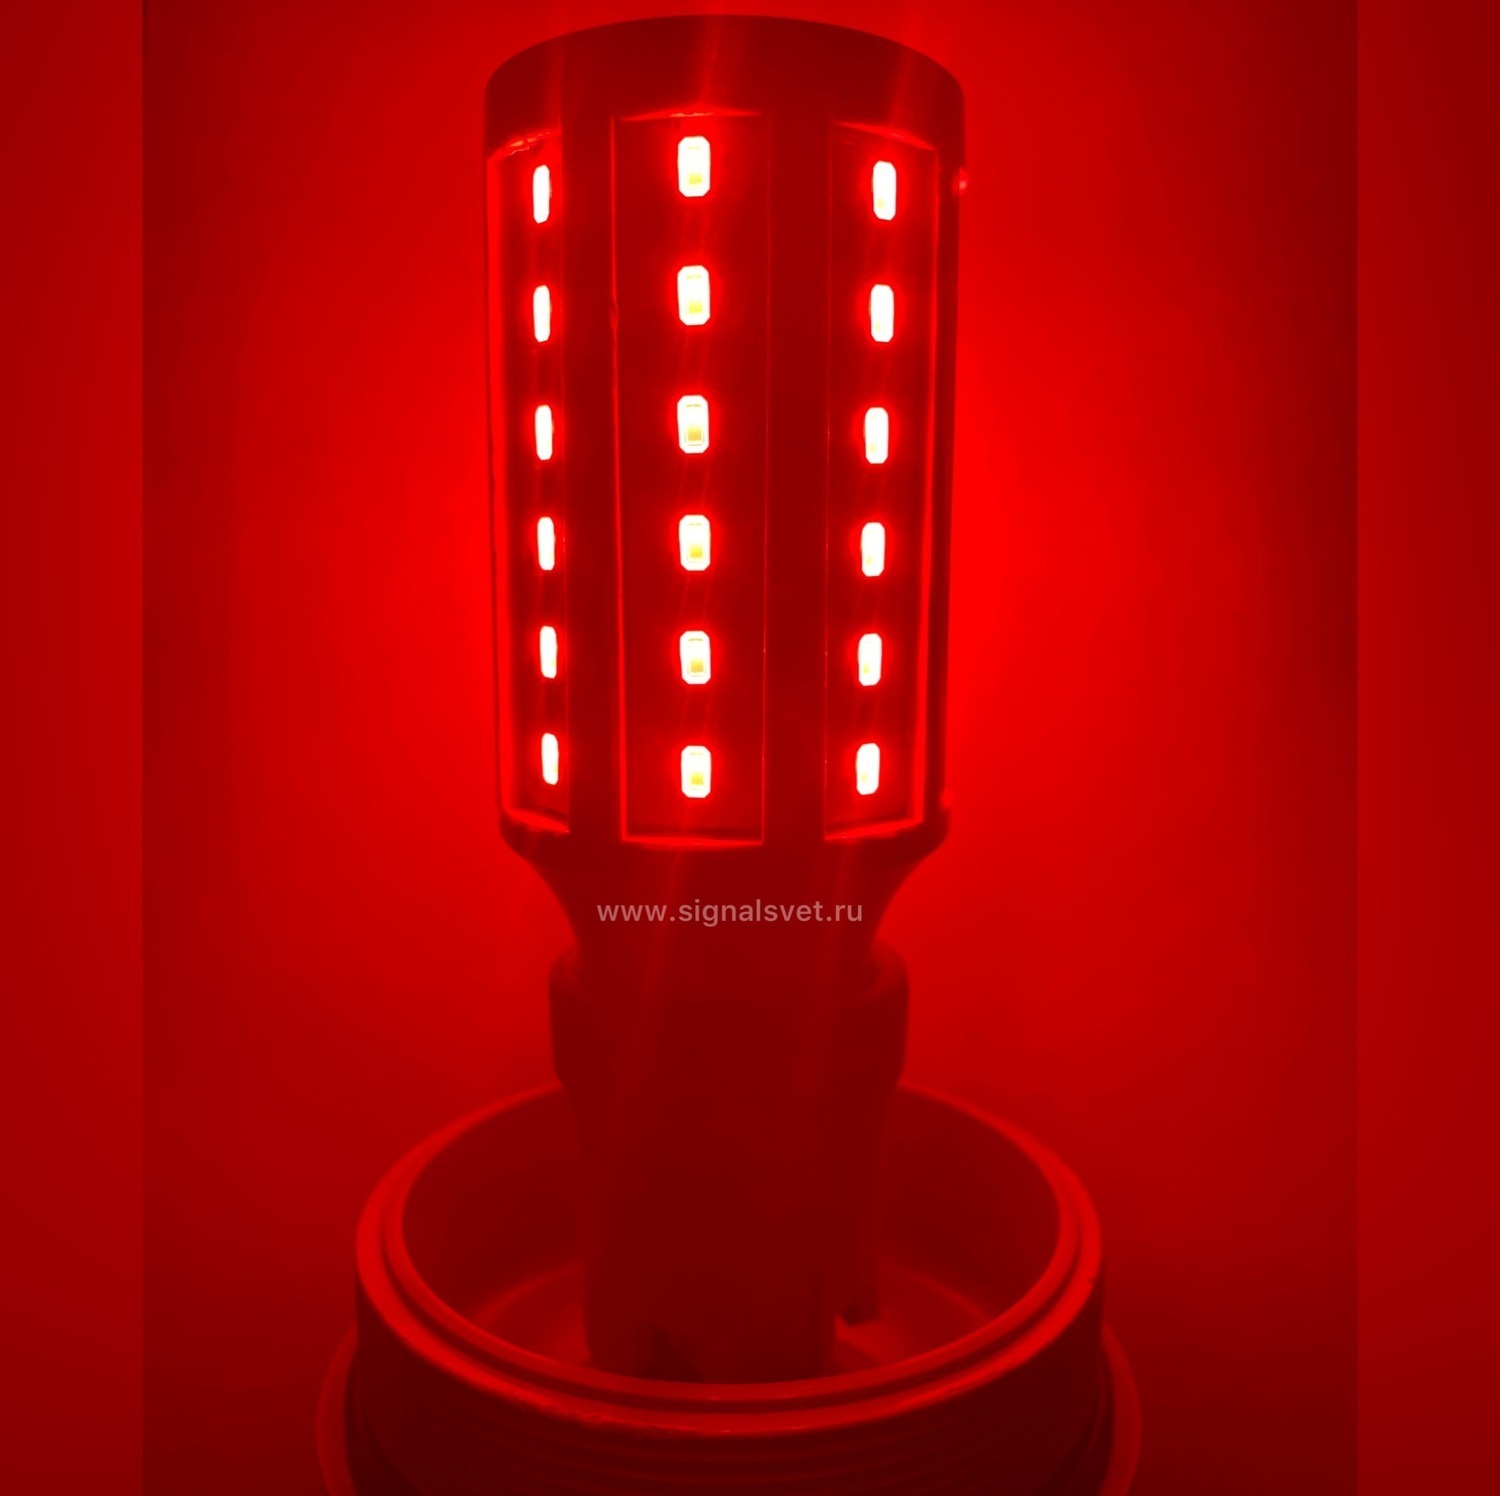 Лампа светодиодная ЛСД М 48В (48V, 35 Кд, 6 Вт)  для ЗОМ и СДЗО-05. Красная